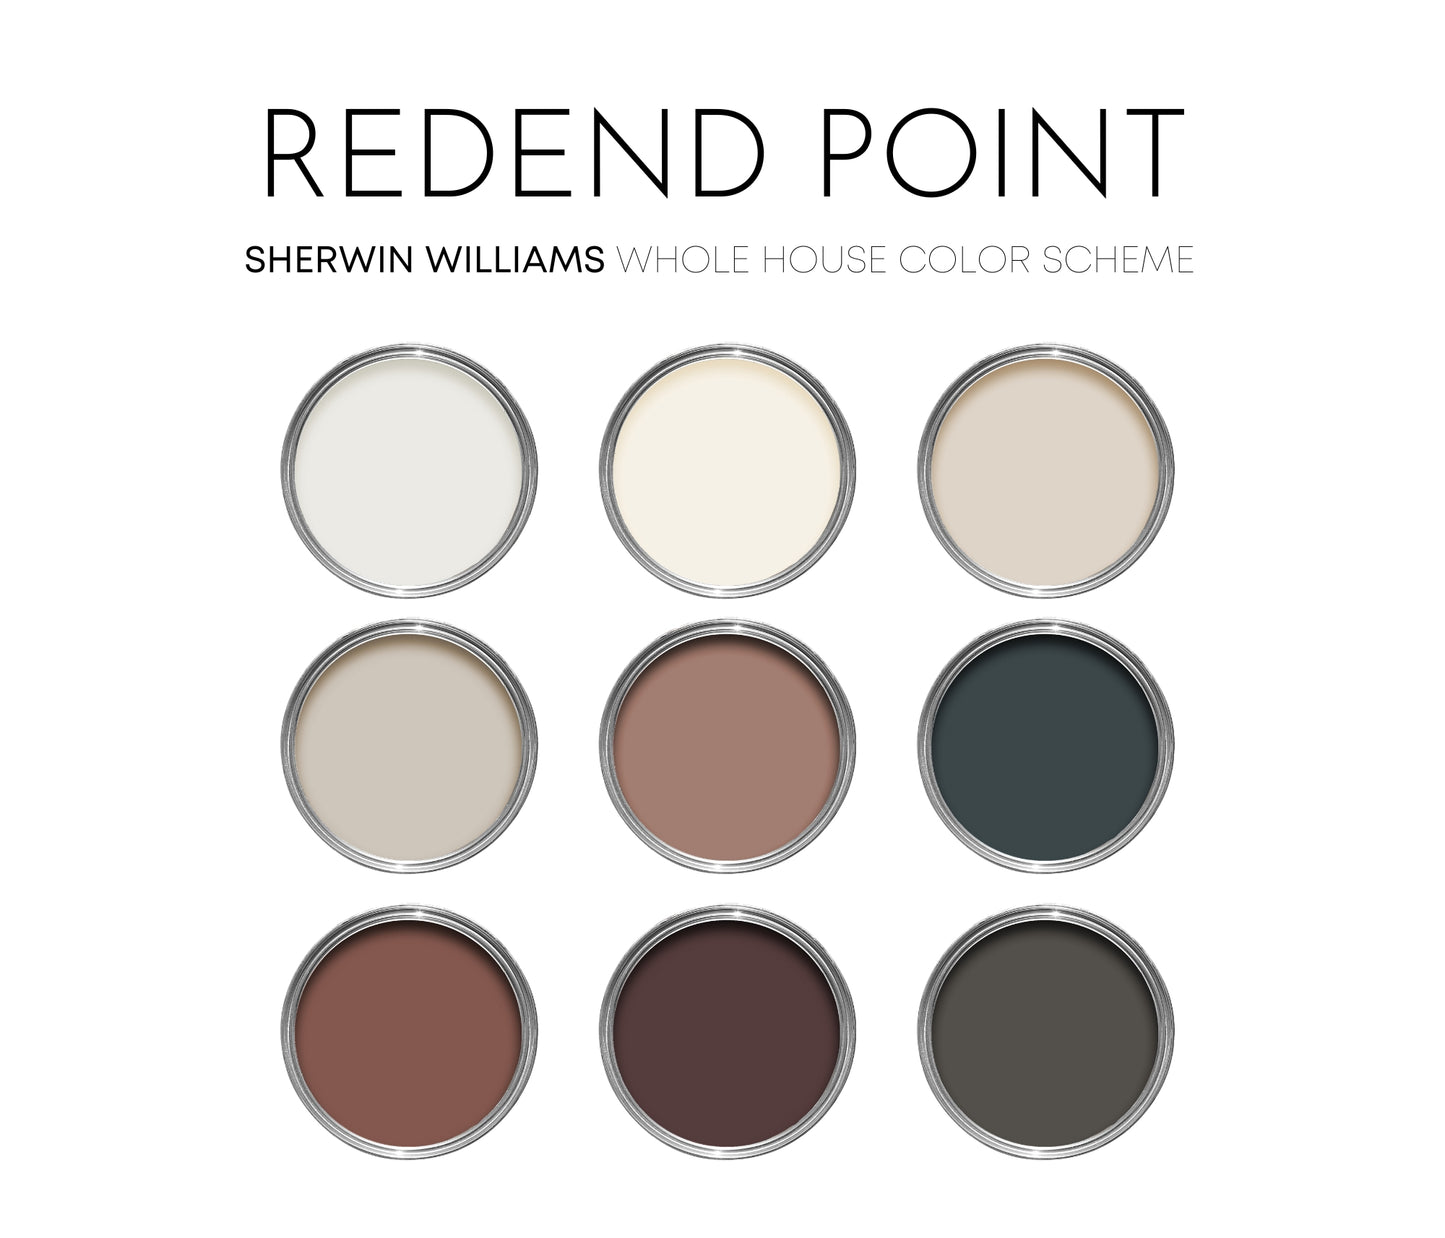 Redend Point Sherwin Williams Paint Palette, Neutral Interior Paint Colors, Earthy Color Scheme, Cascades Compliments, Warm Neutrals